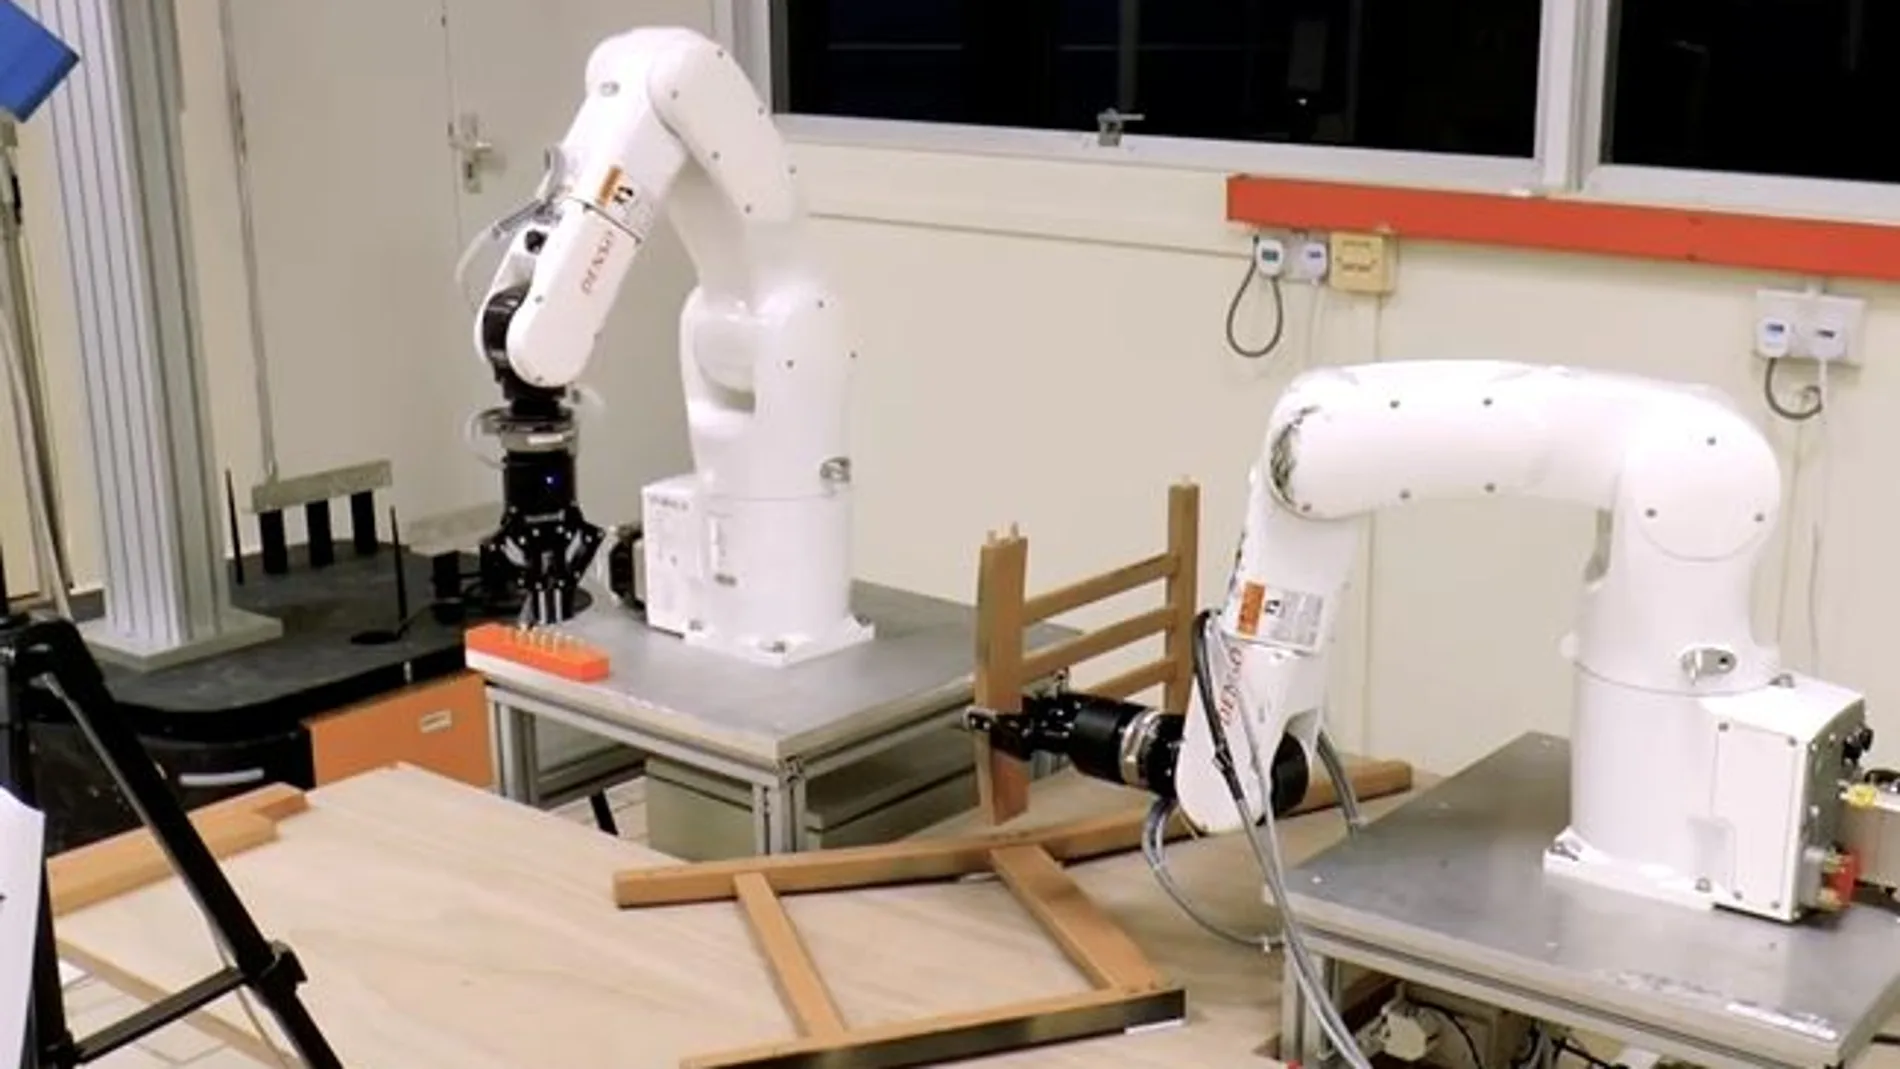 El robot montador de muebles, en acción